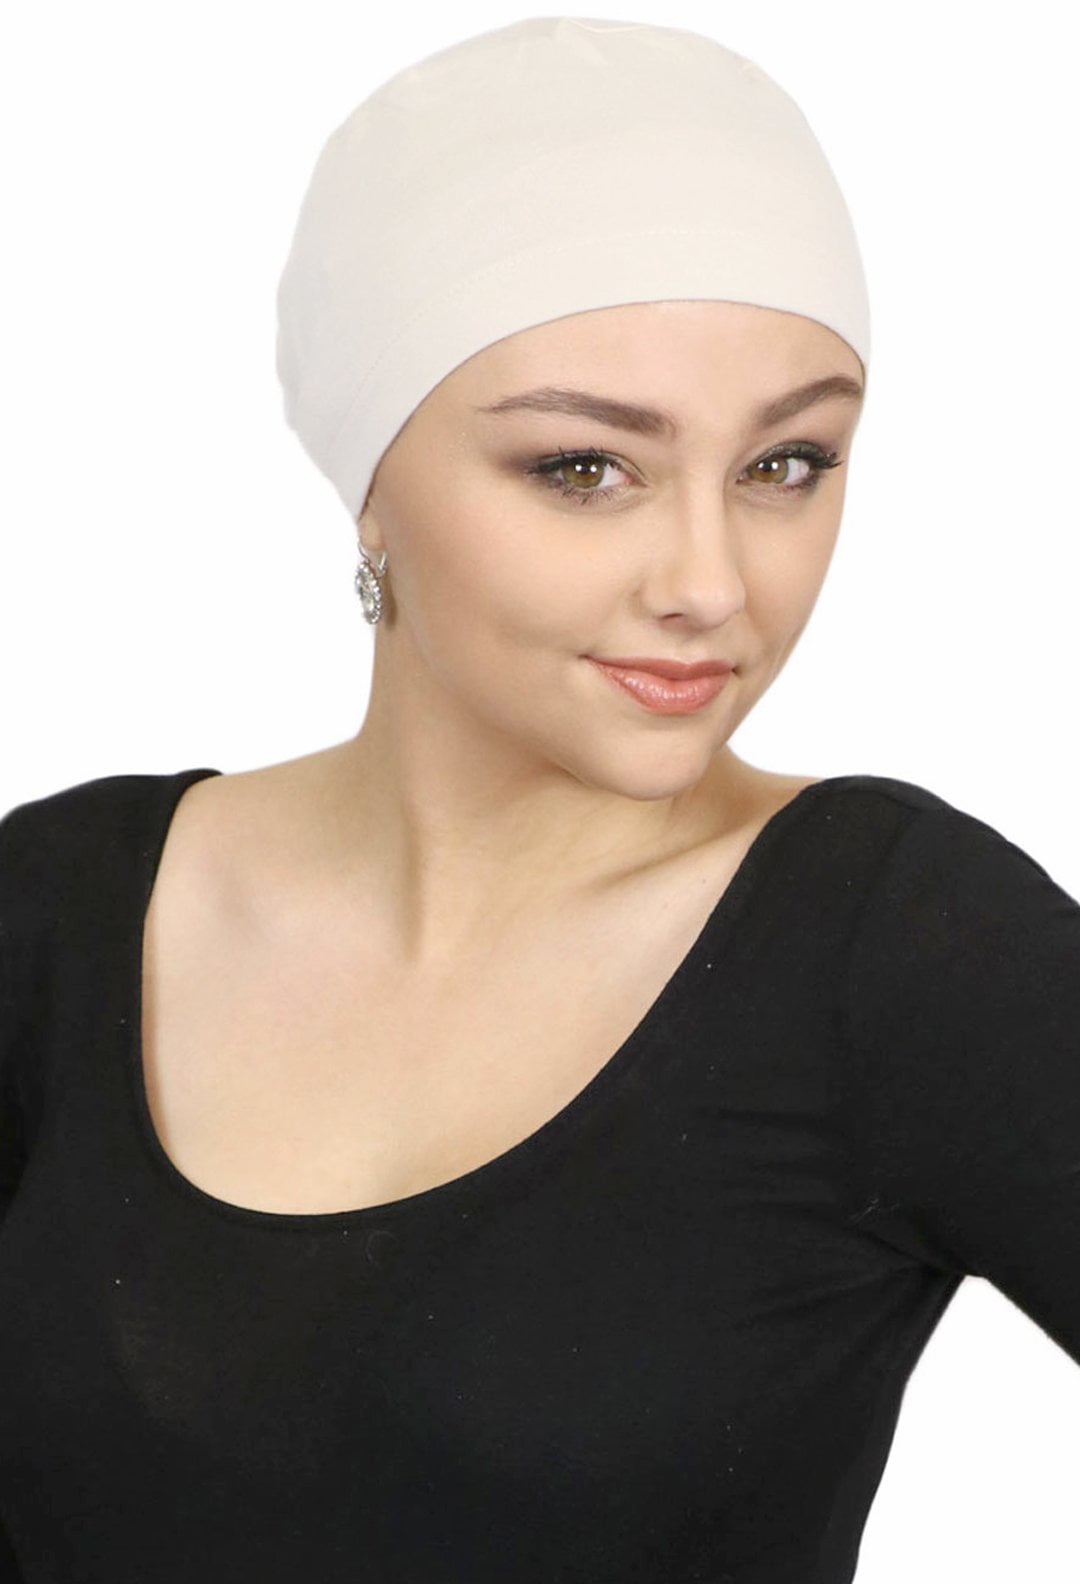 DJB Women’s Cotton Turban Beanie Head Wrap Chemo Cap Hair Loss Hat Sleep Cap